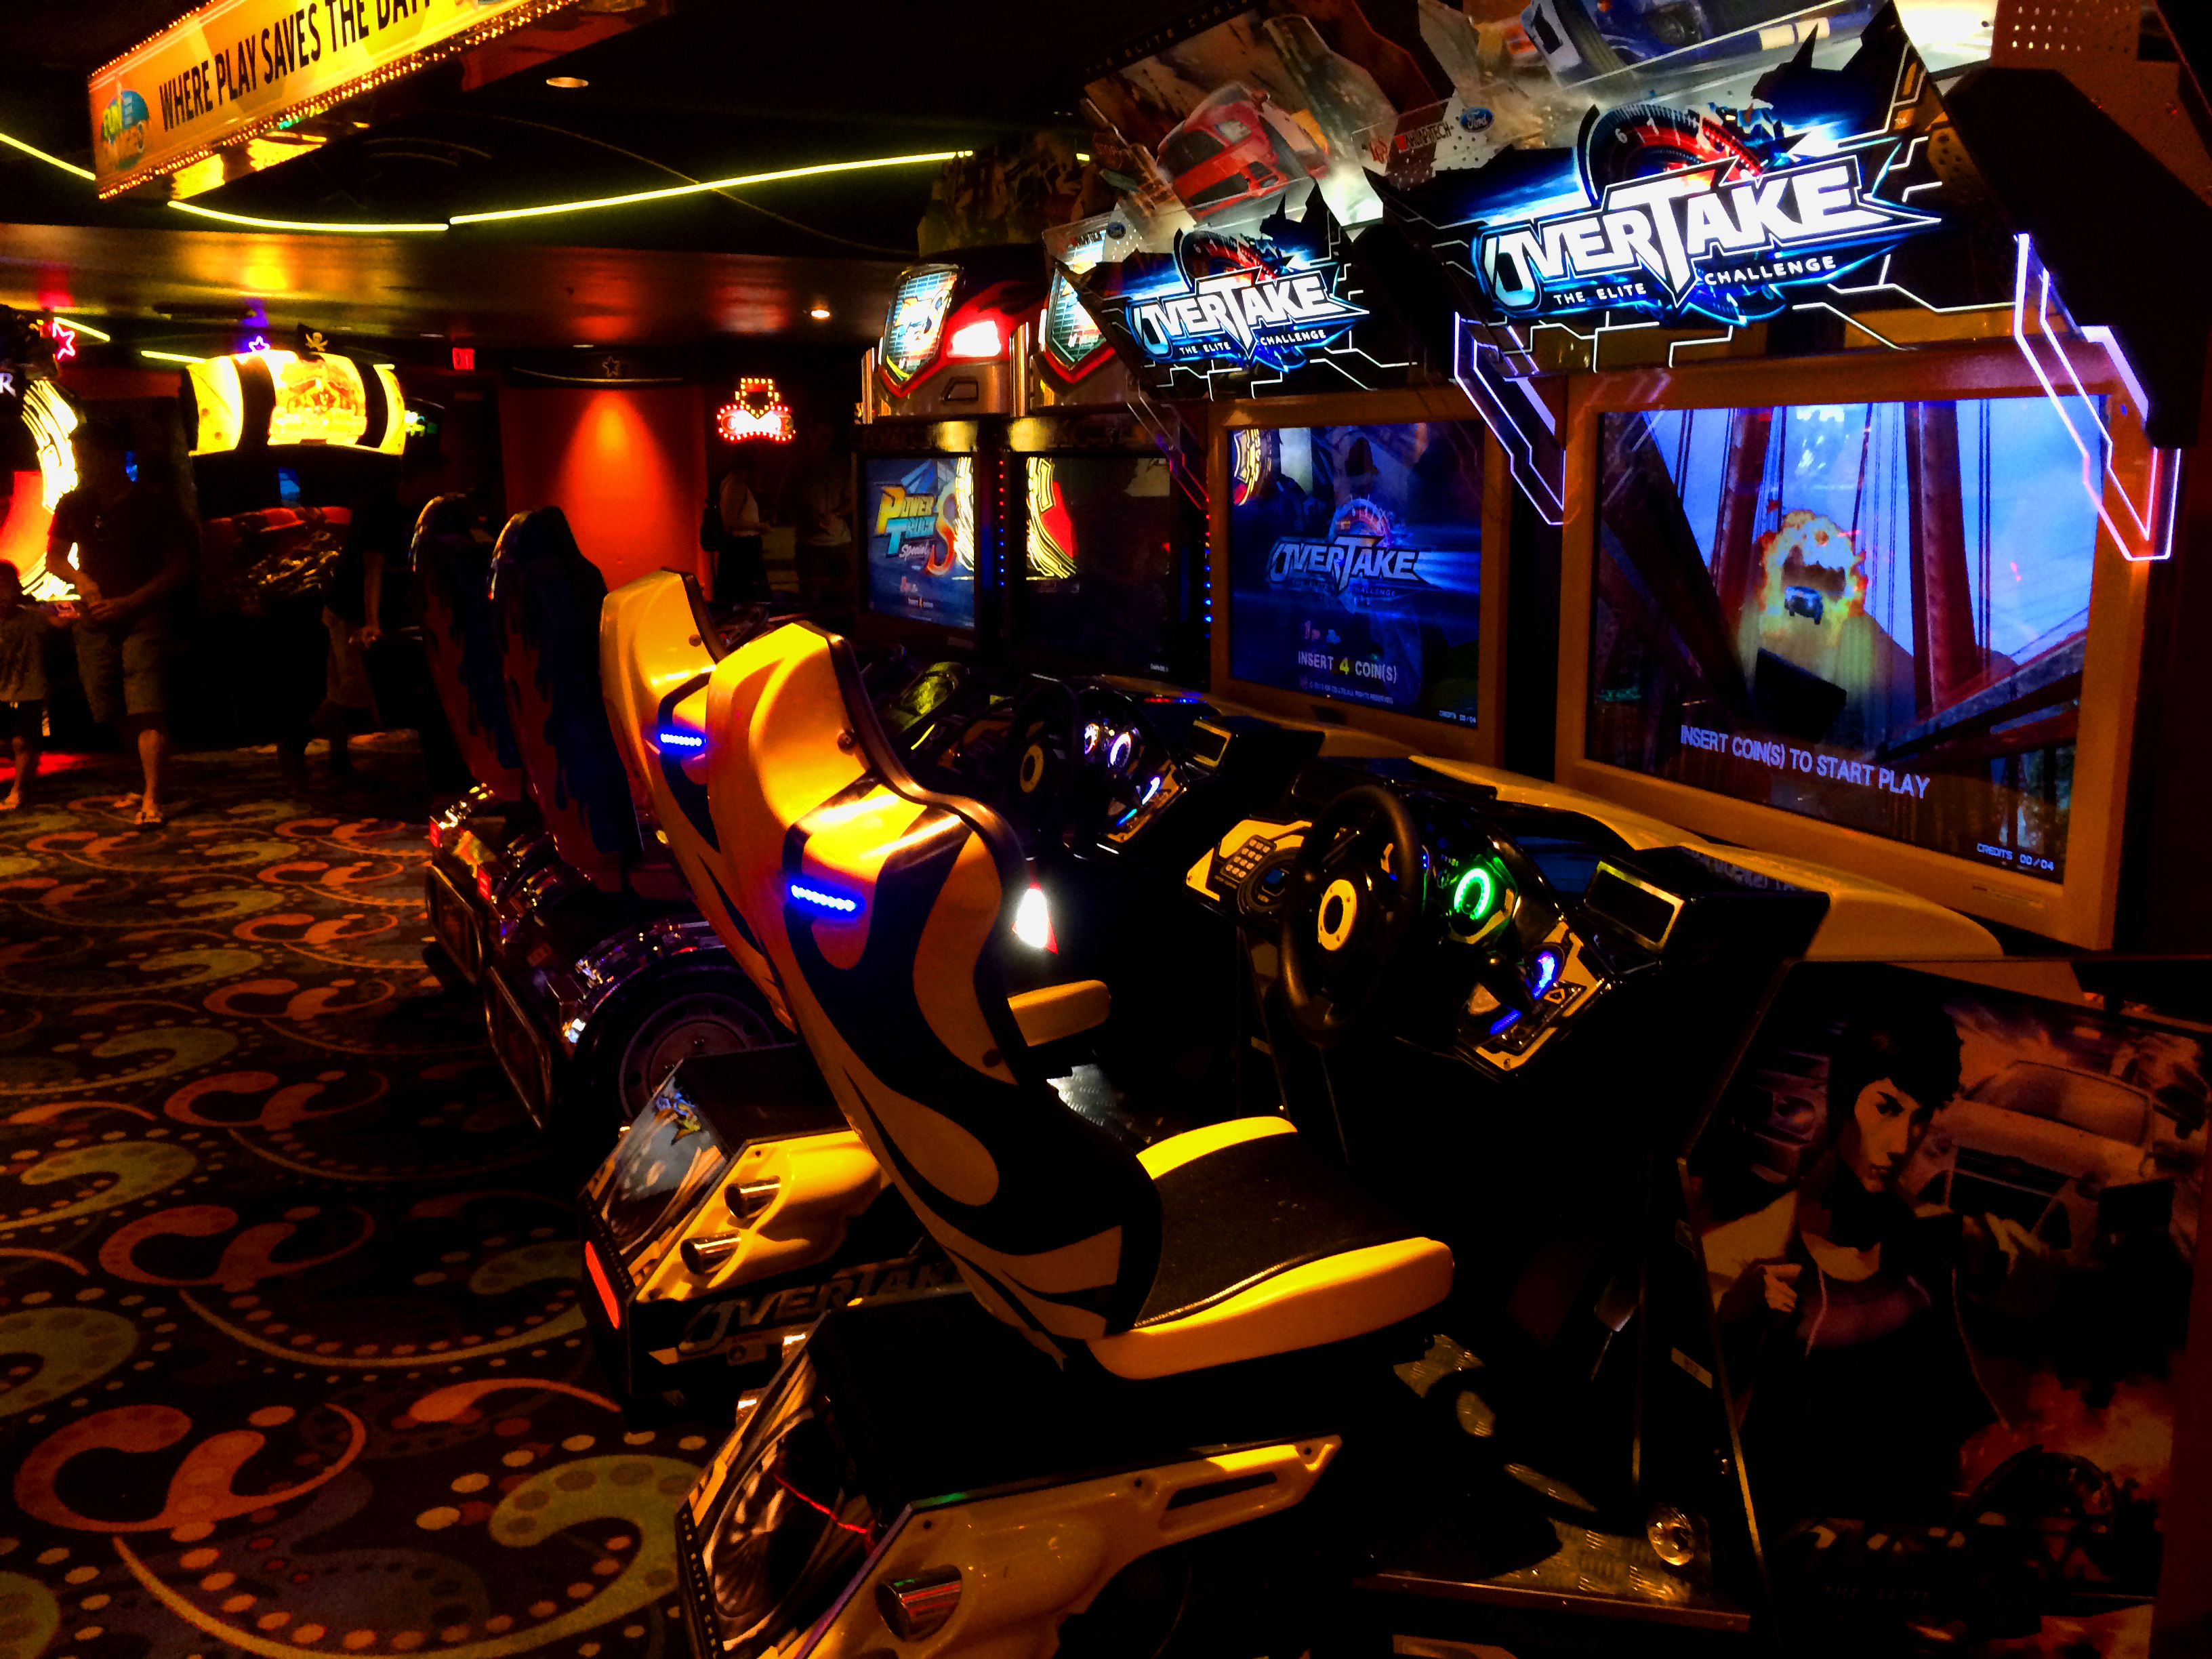 ラスベガスを遊び倒せ ギャンブルとは相反する街で垣間見たアーケードゲームシーンとは Automaton